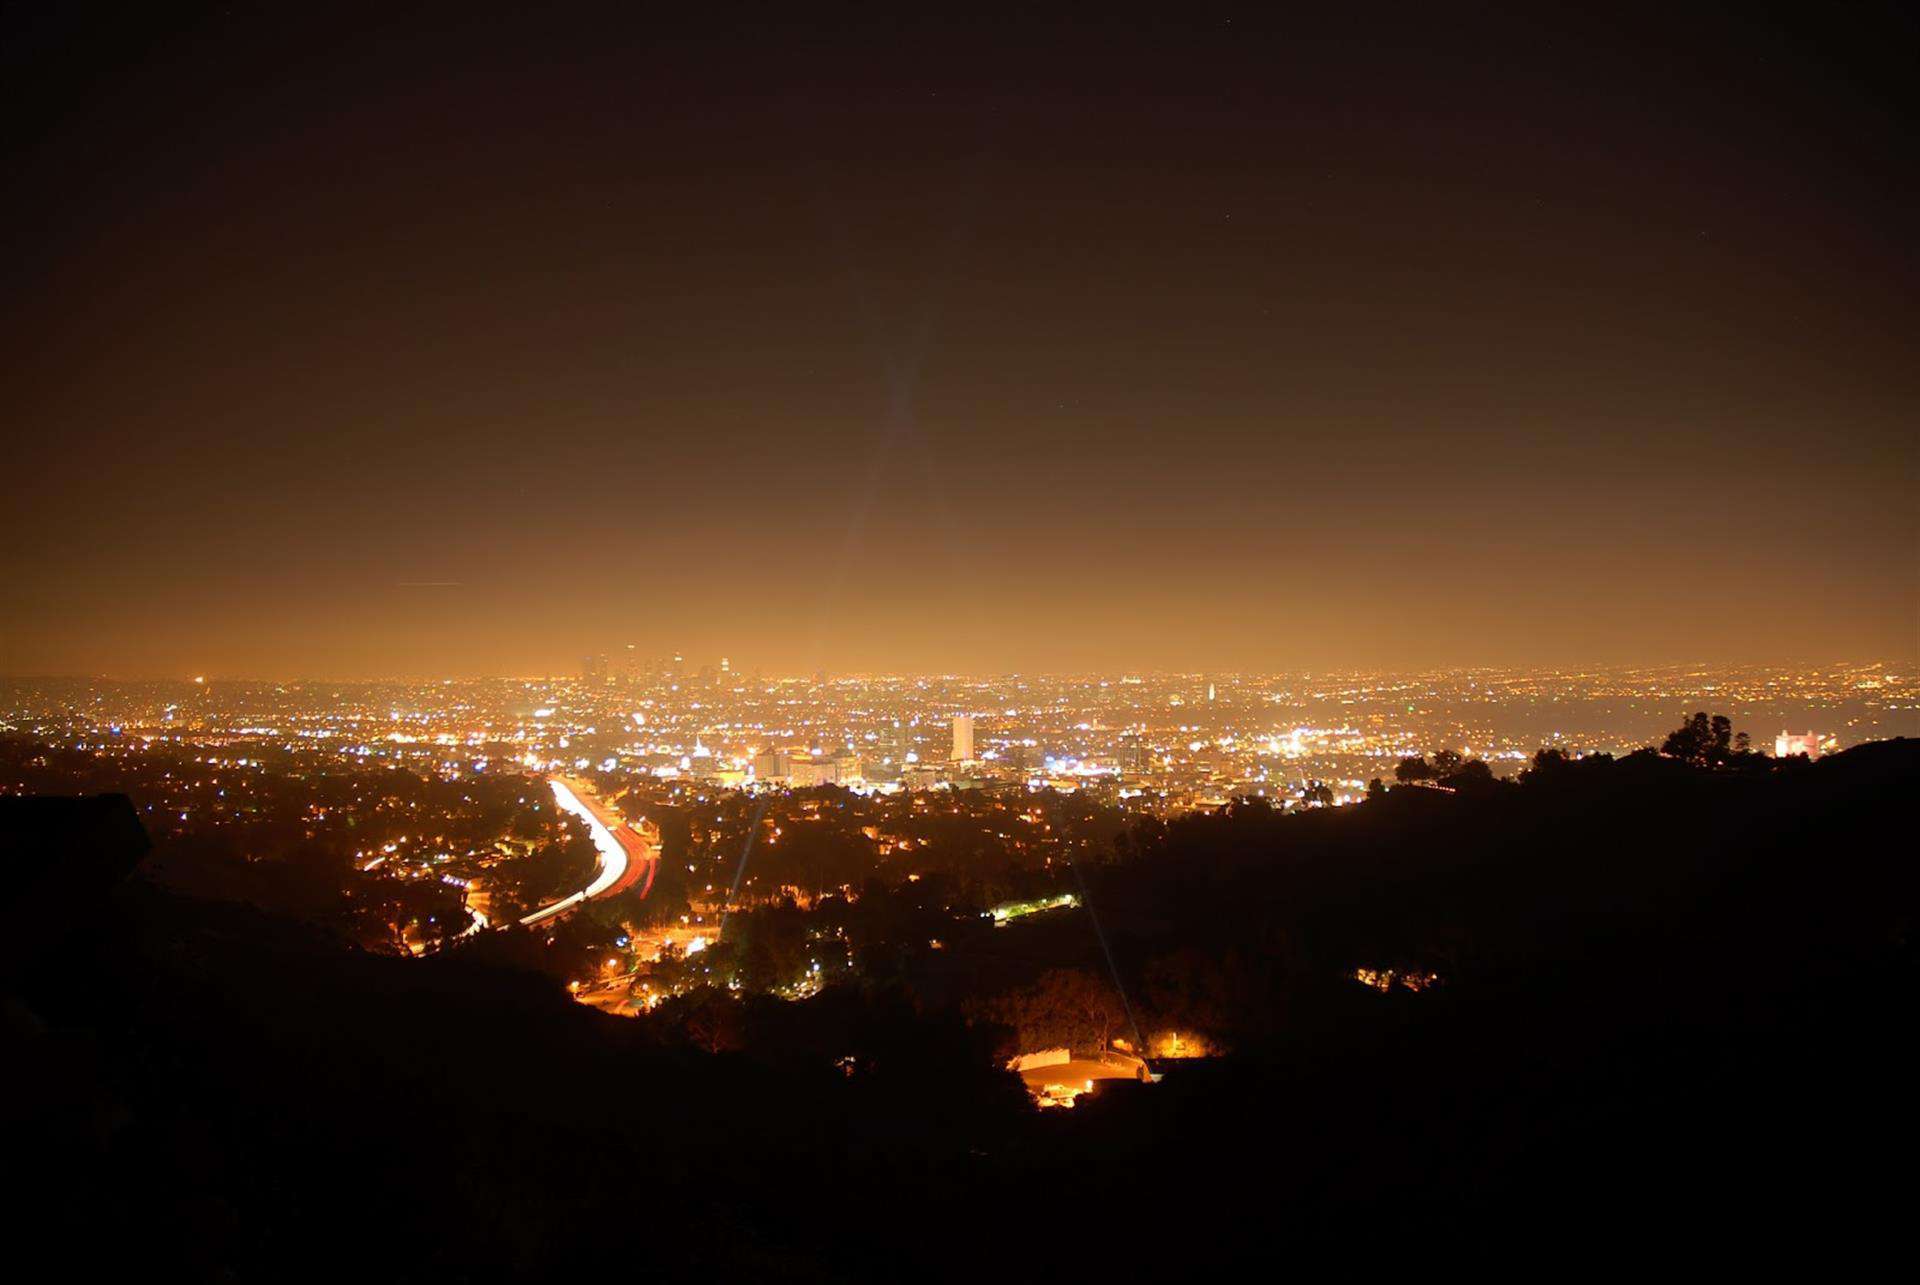 Iluminación contaminada: 10 formas sostenibles de lograr un cielo nocturno perfecto